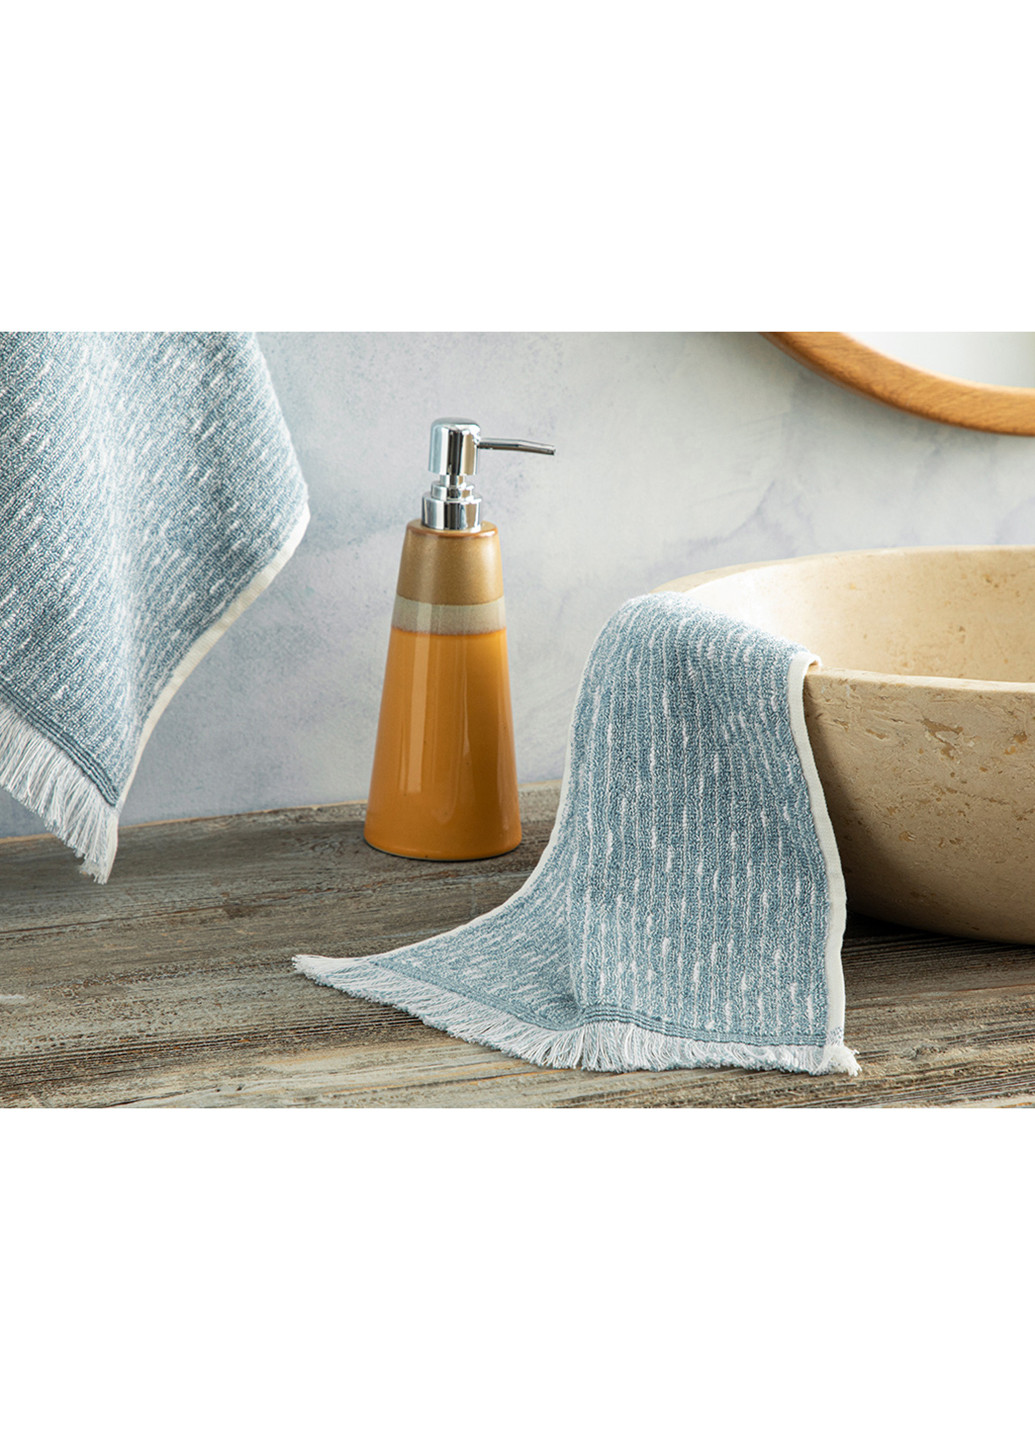 English Home полотенце для рук, 30х40 см меланж синий производство - Турция